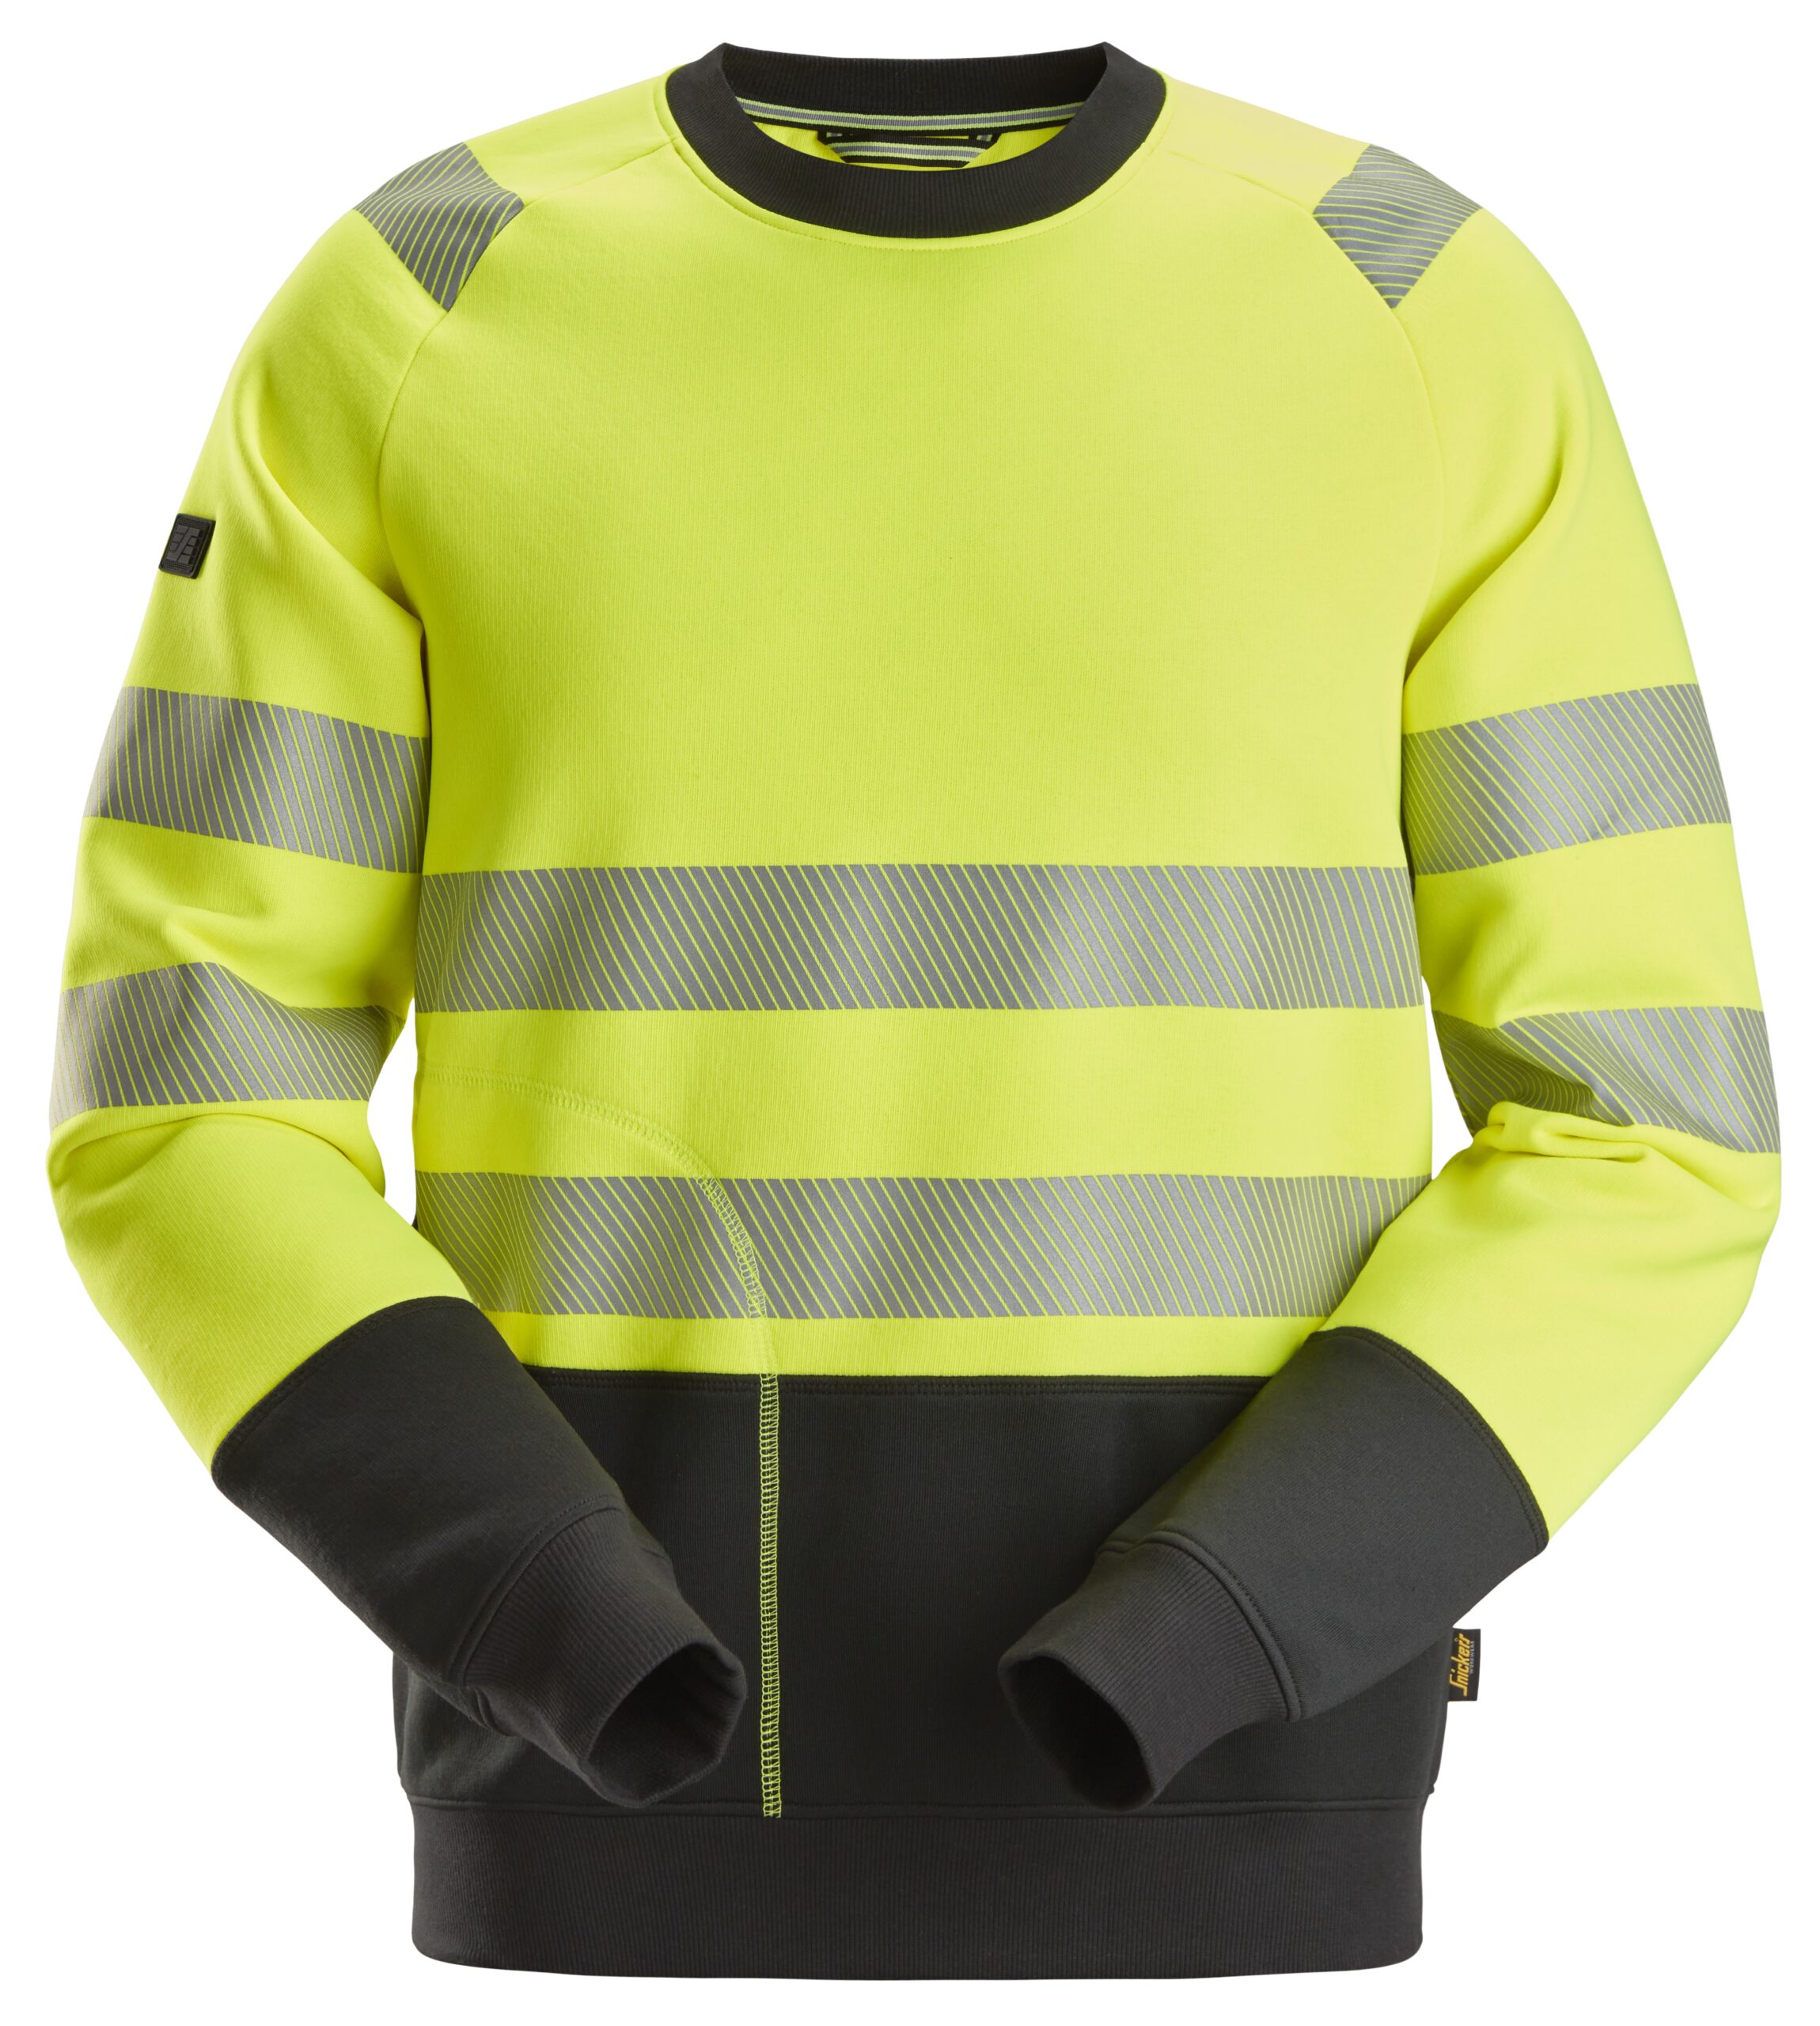 Antecedent voorzien Makkelijk in de omgang High-Vis Klasse 2, Sweatshirt - Snickers Workwear - 2831 - Veys  bedrijfskleding